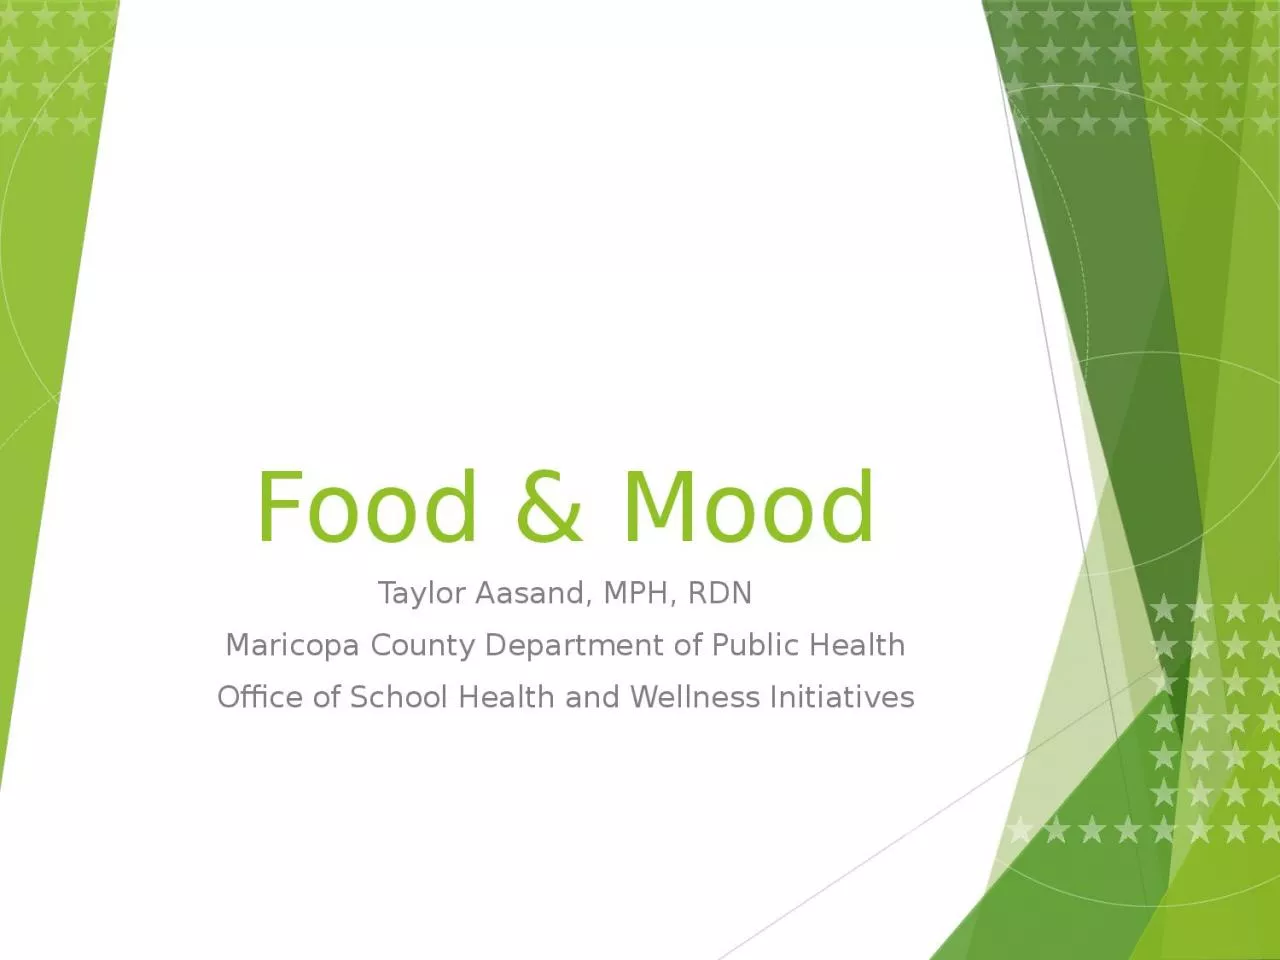 Food & Mood Taylor Aasand, MPH, RDN